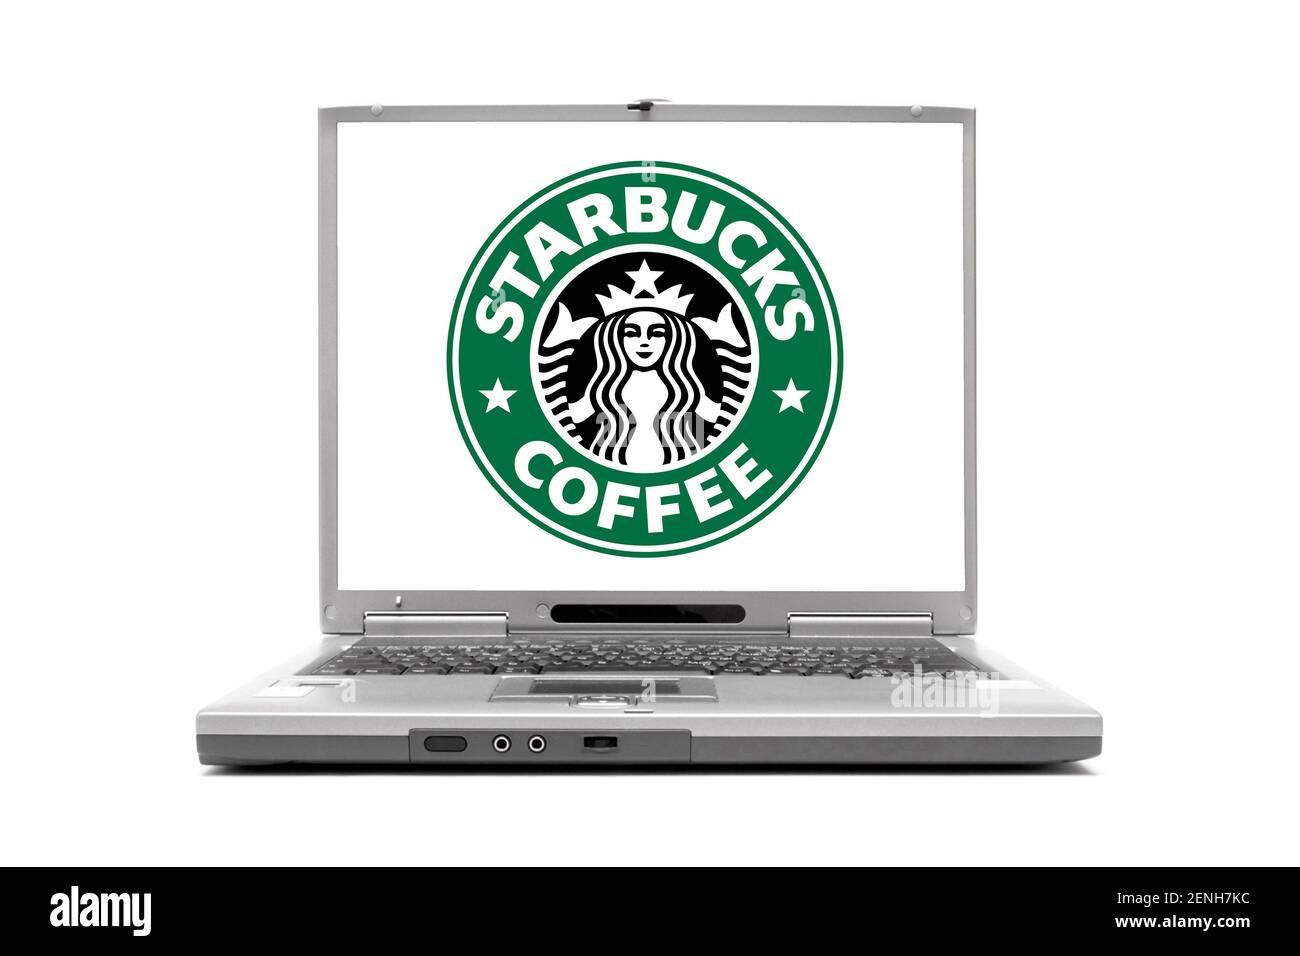 Starbucks, Coffee, Kaffee, Einkaufen am Laptop, Online Shop, Online, Shoppen, Beratung, Berufe, Service, Einkaufen, Home-Office, Termin, Buchen, Buchu Stock Photo